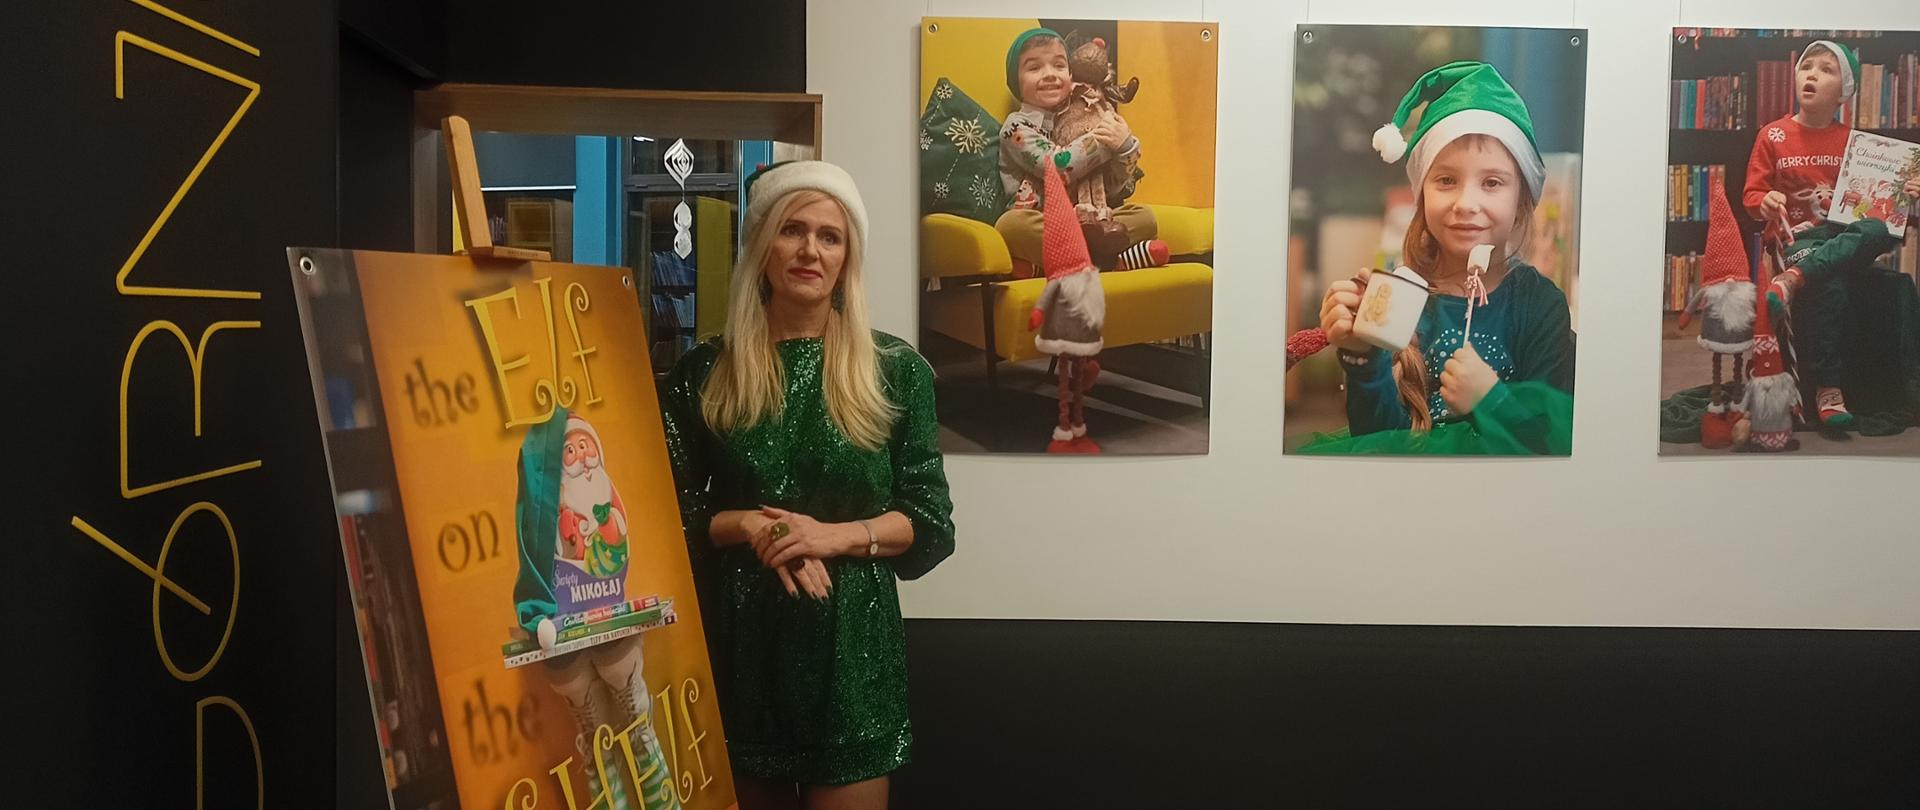 Kobieta ubrana w zielony strój elfa stoi przed plakatem z hasłem "Elf in the Shelf"